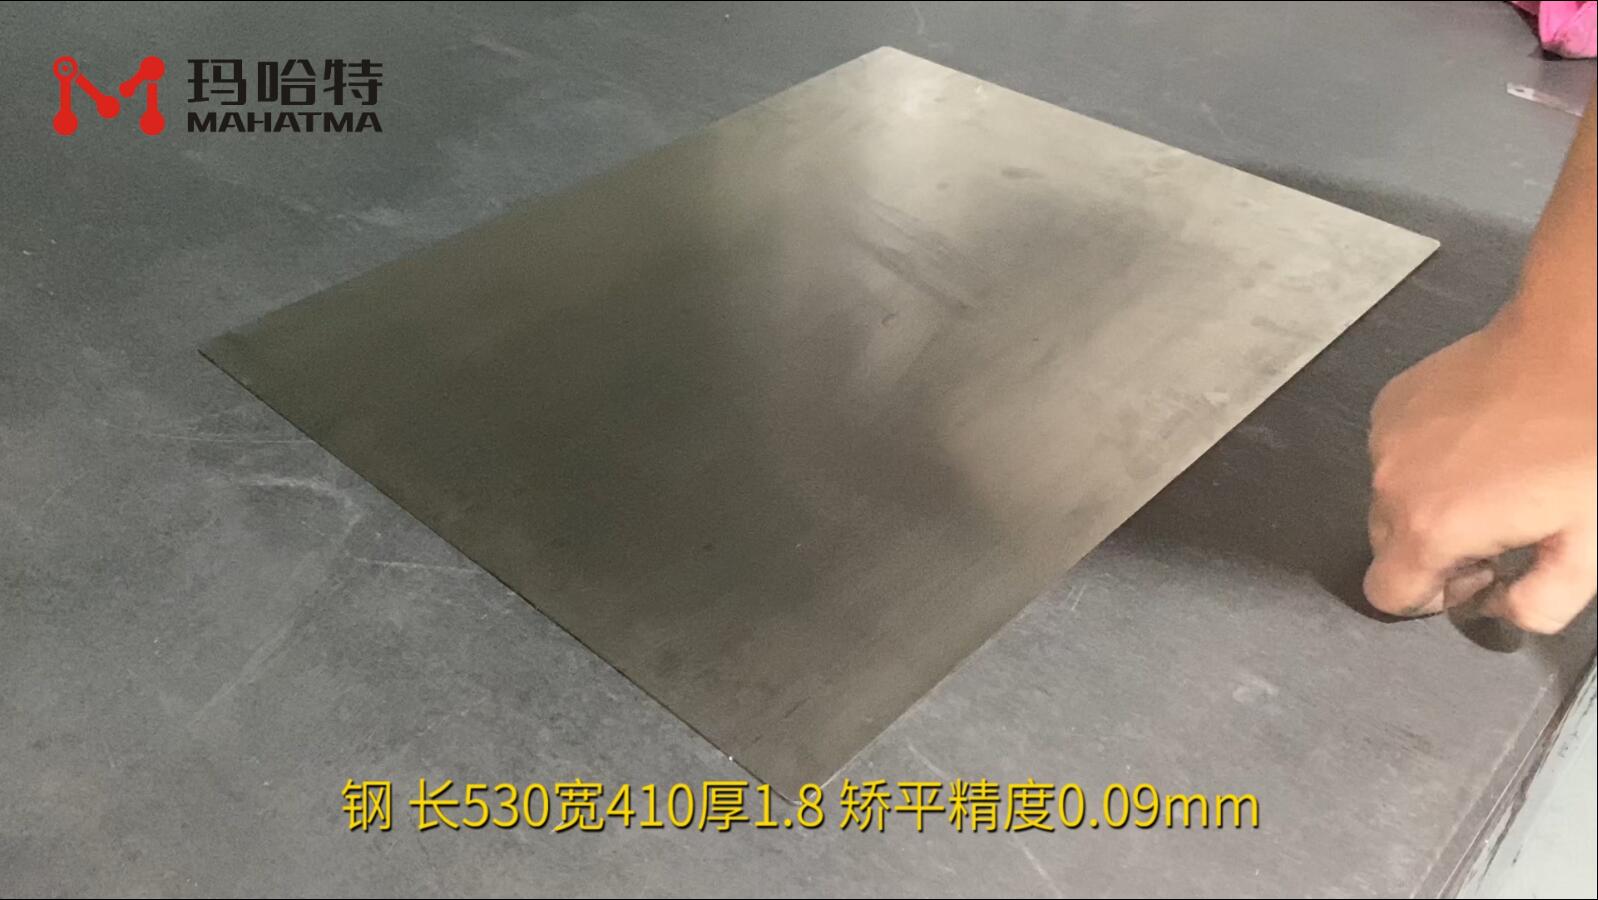 钢 MHT50-1700 长方形 长530宽410厚1.8 矫平精度0.09mm